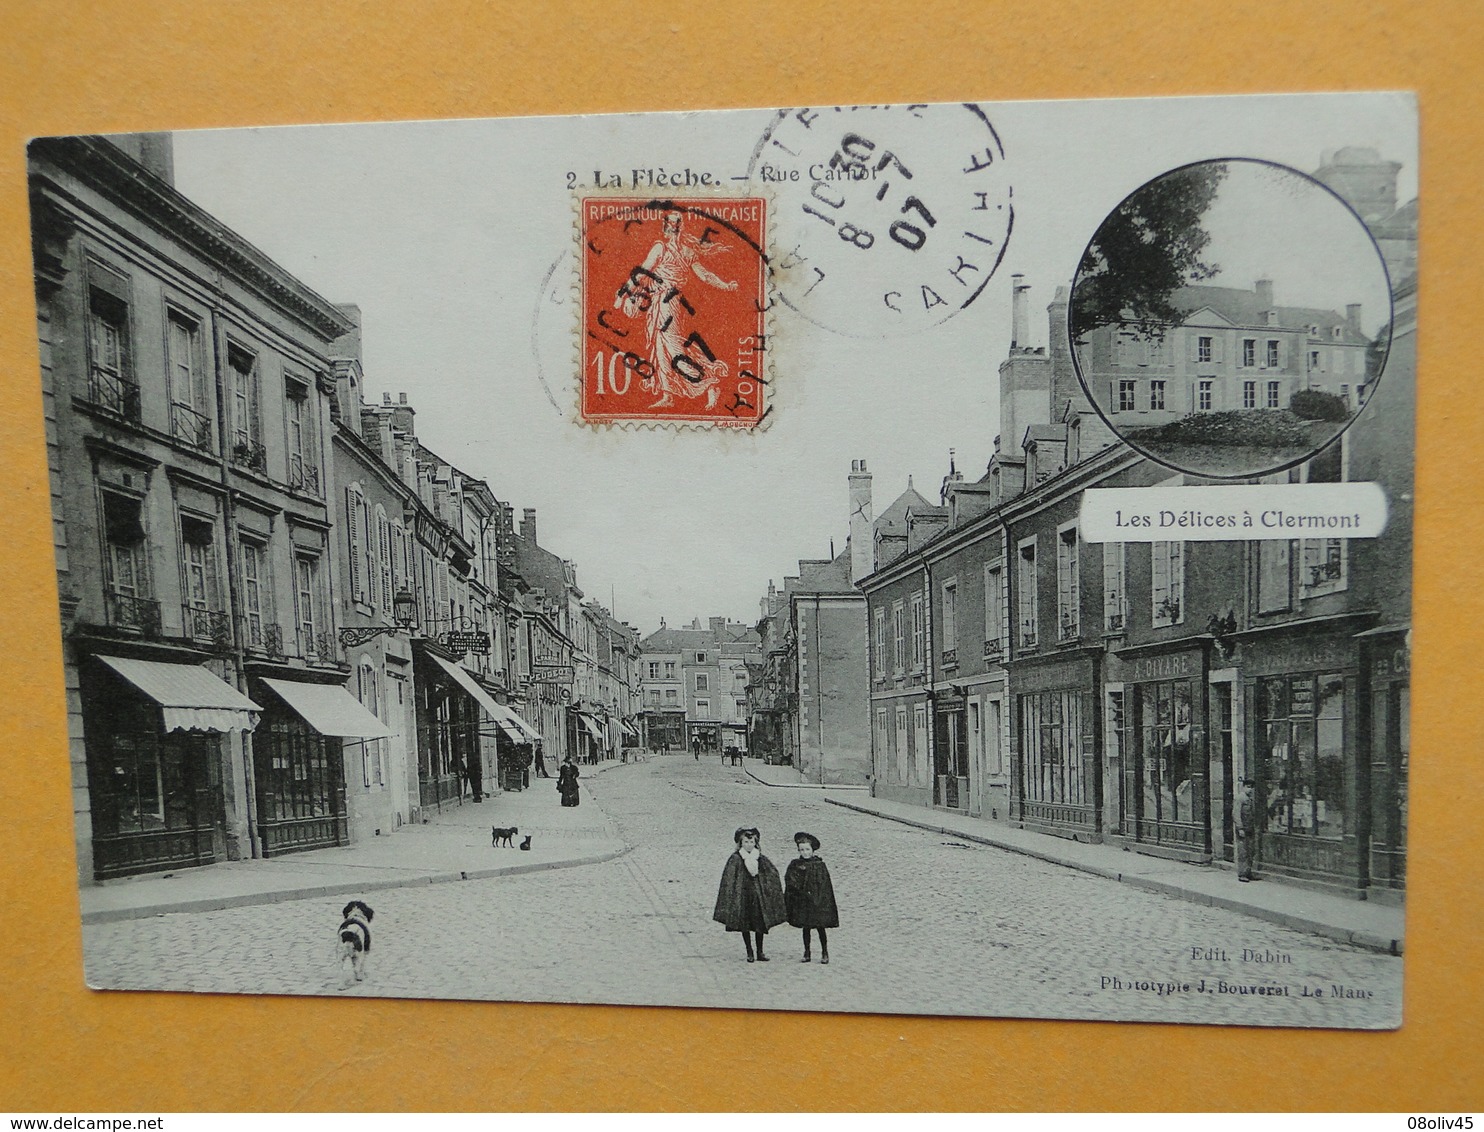 Joli lot de 50 Cartes Postales Anciennes FRANCE -- TOUTES ANIMEES - Voir les 50 scans - Lot N° 2